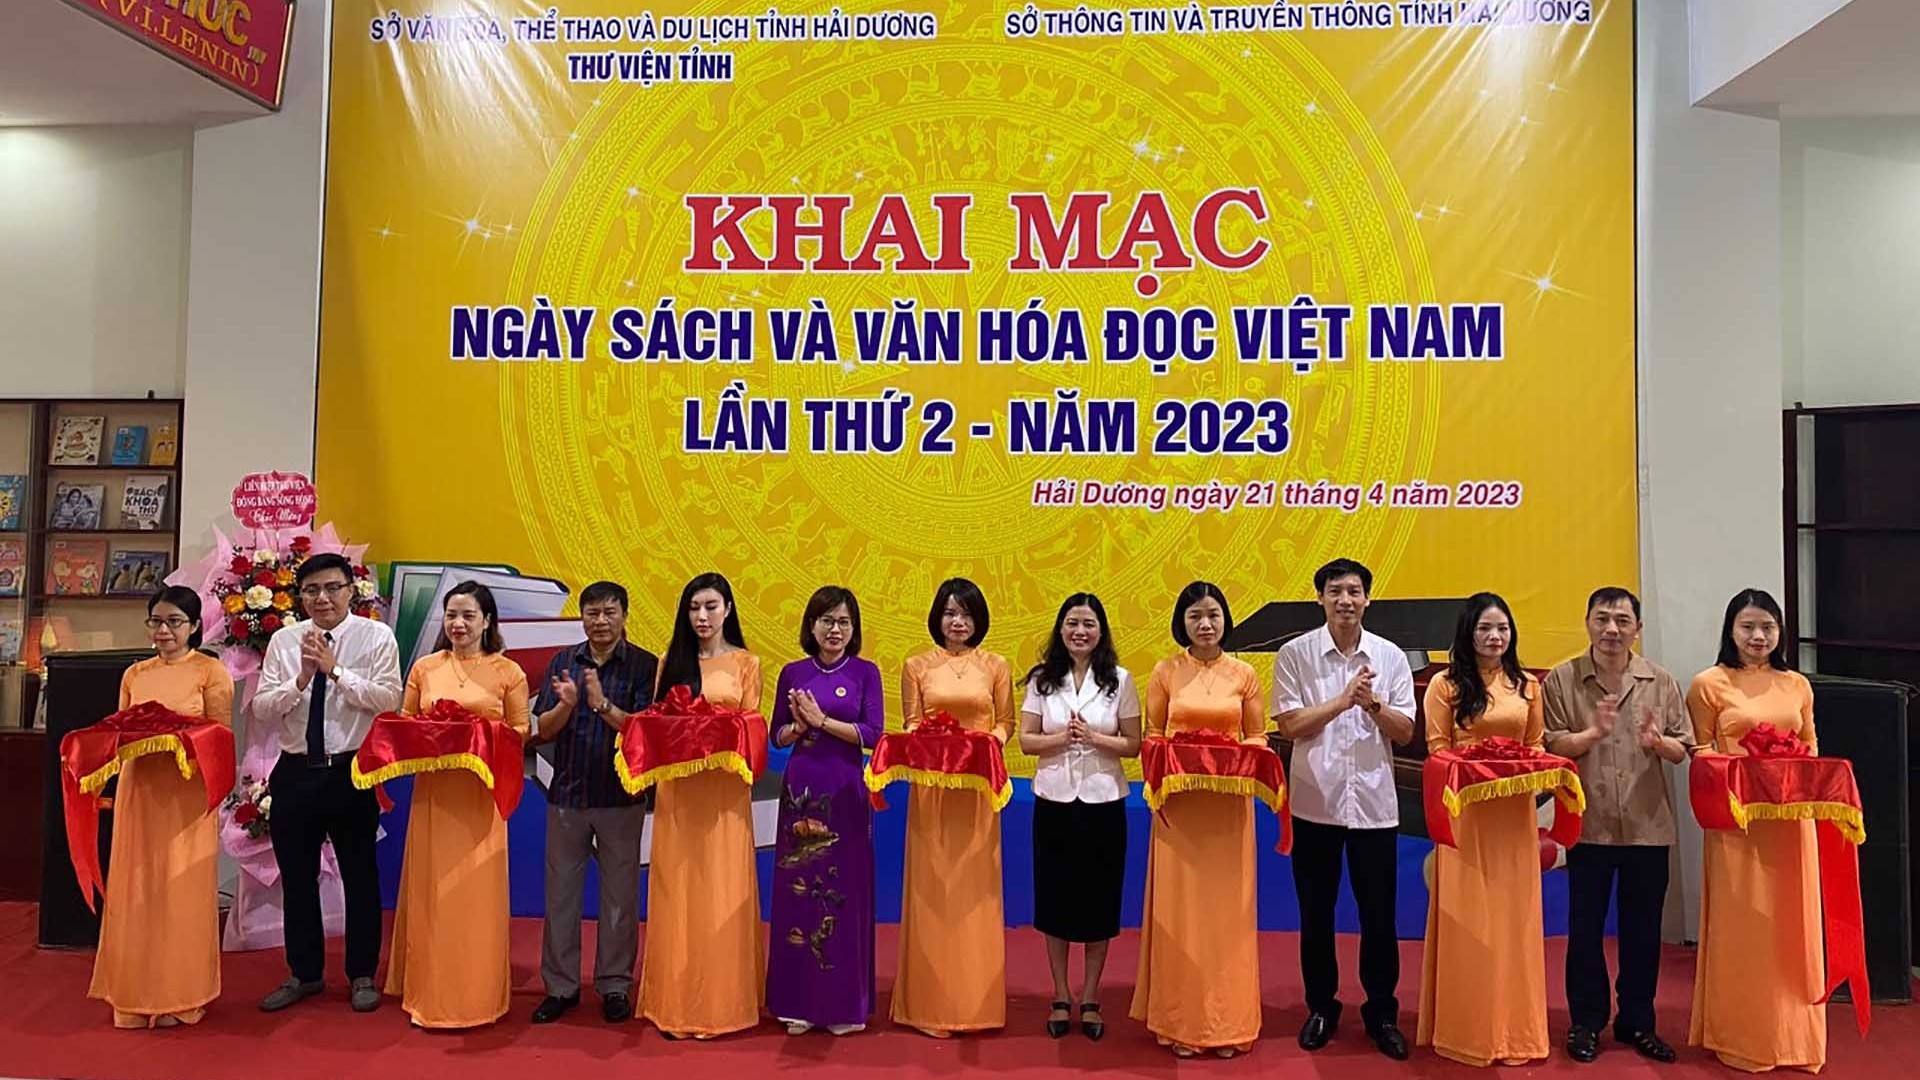 Hải Dương khuyến khích phong trào đọc sách qua Ngày sách và Văn hóa đọc Việt Nam lần thứ 2 năm 2023